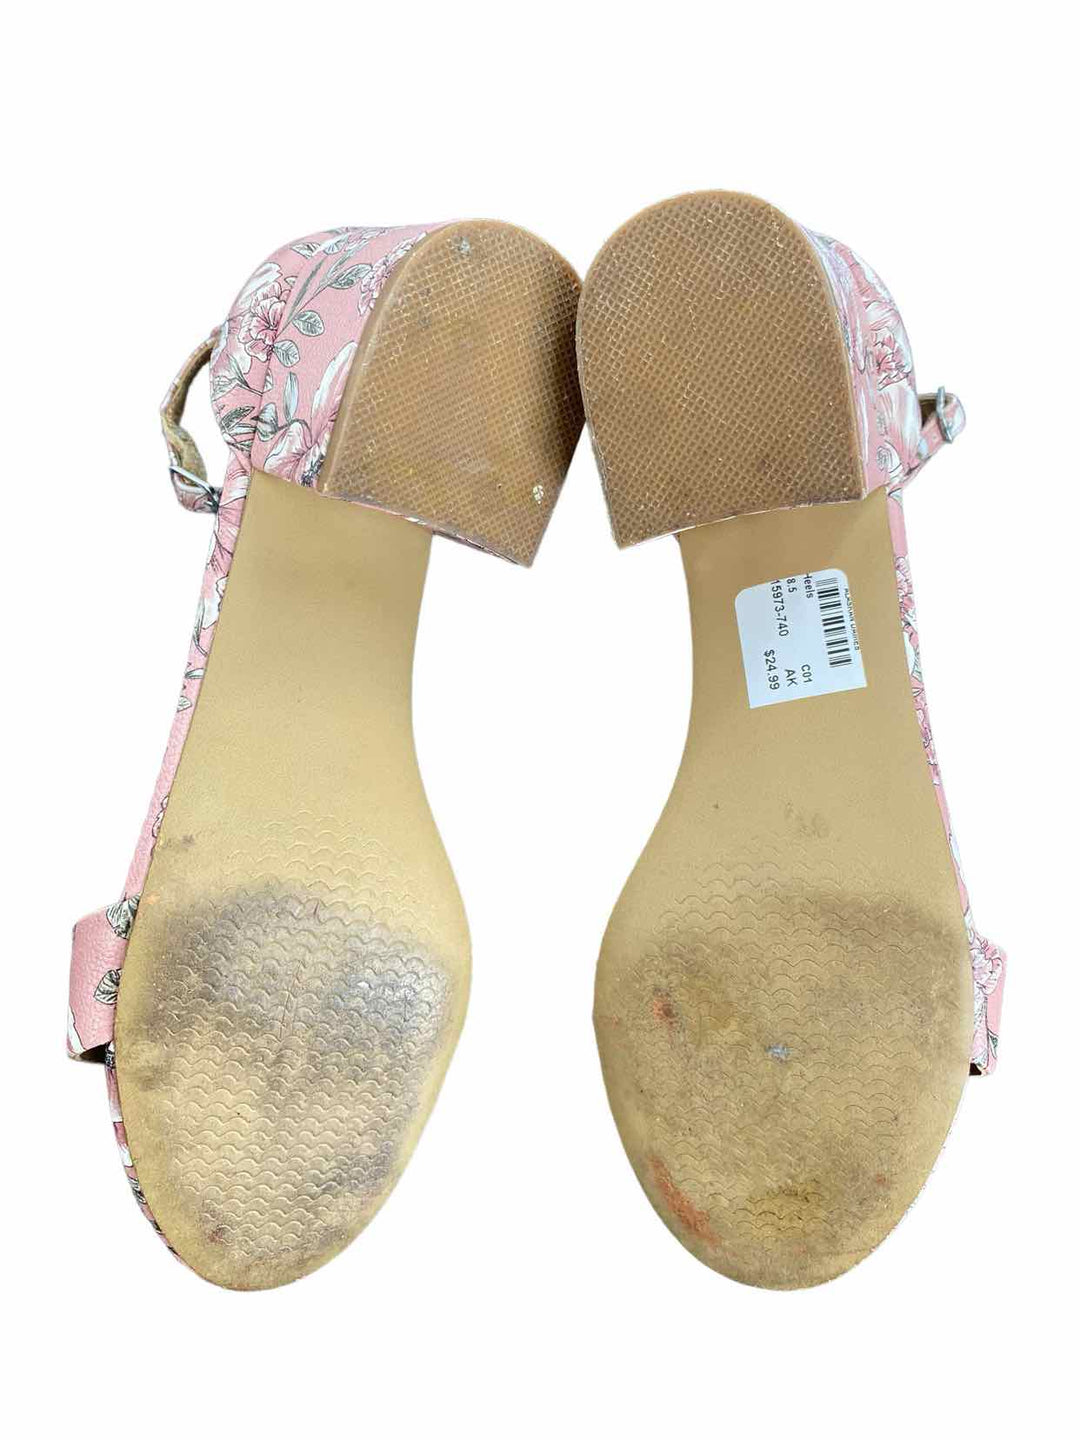 Steve Madden Shoe Size 8.5 Pink Open Toe Heels